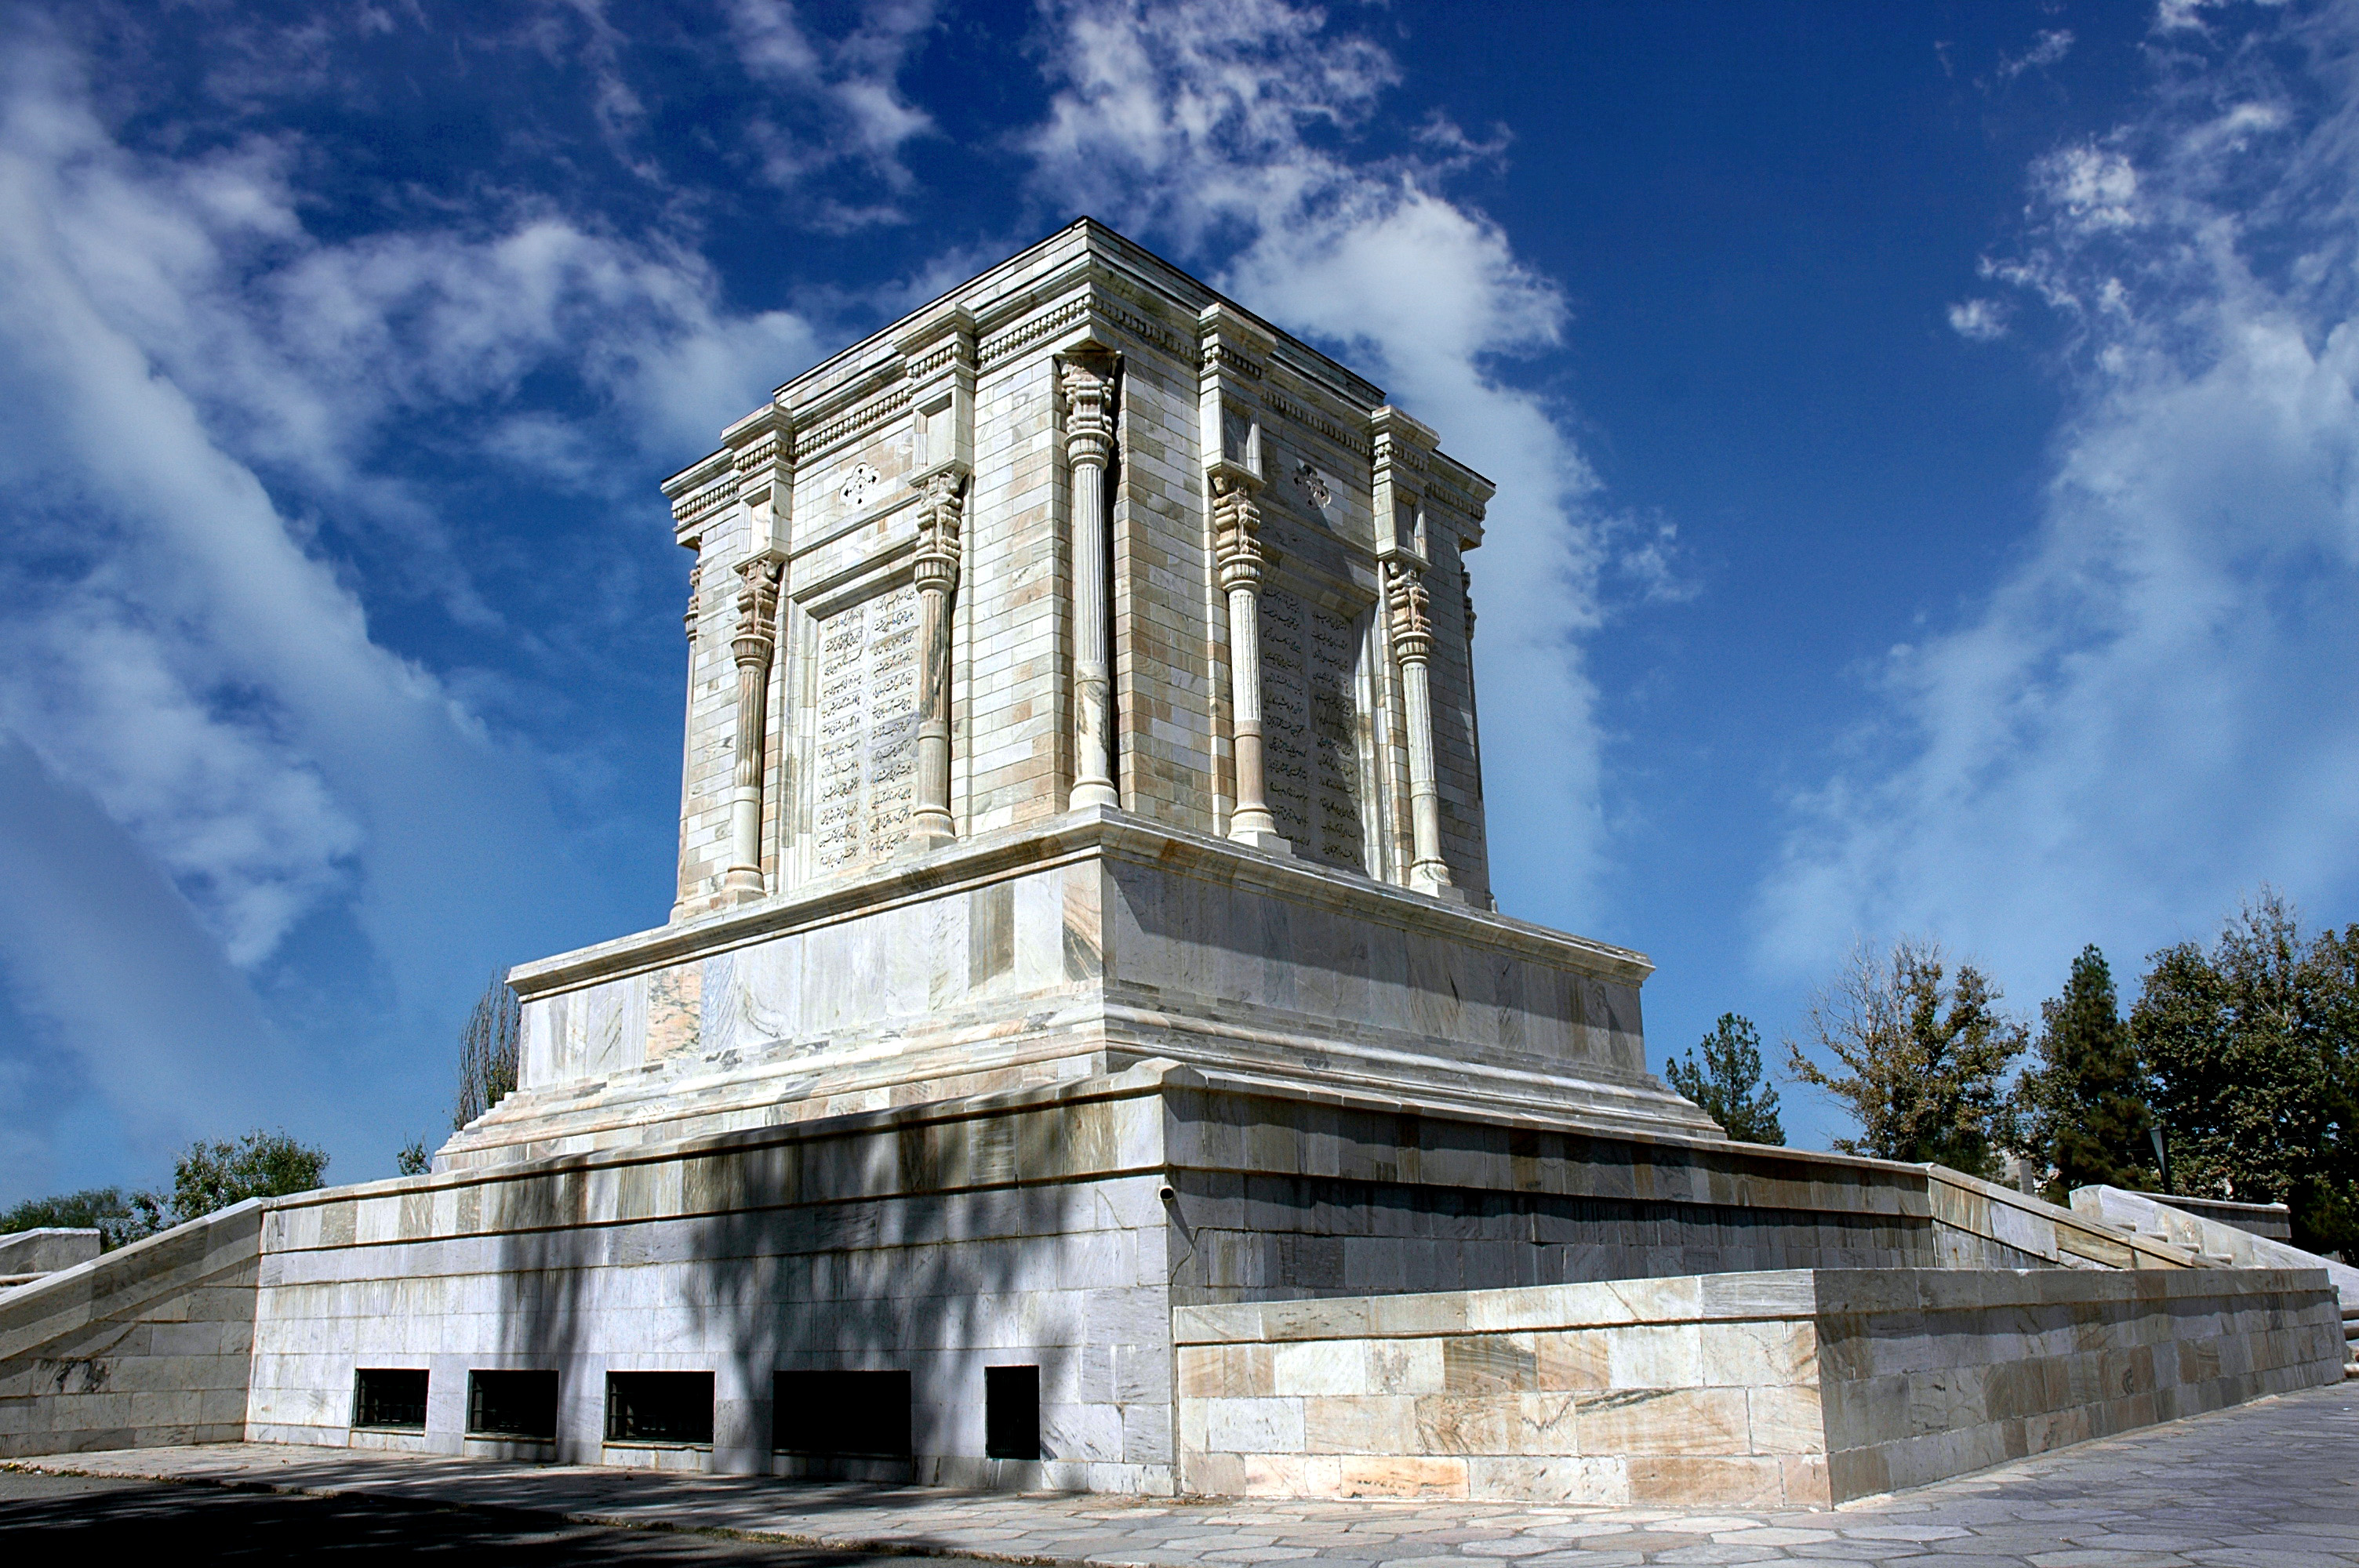 Ferdowsi Tomb